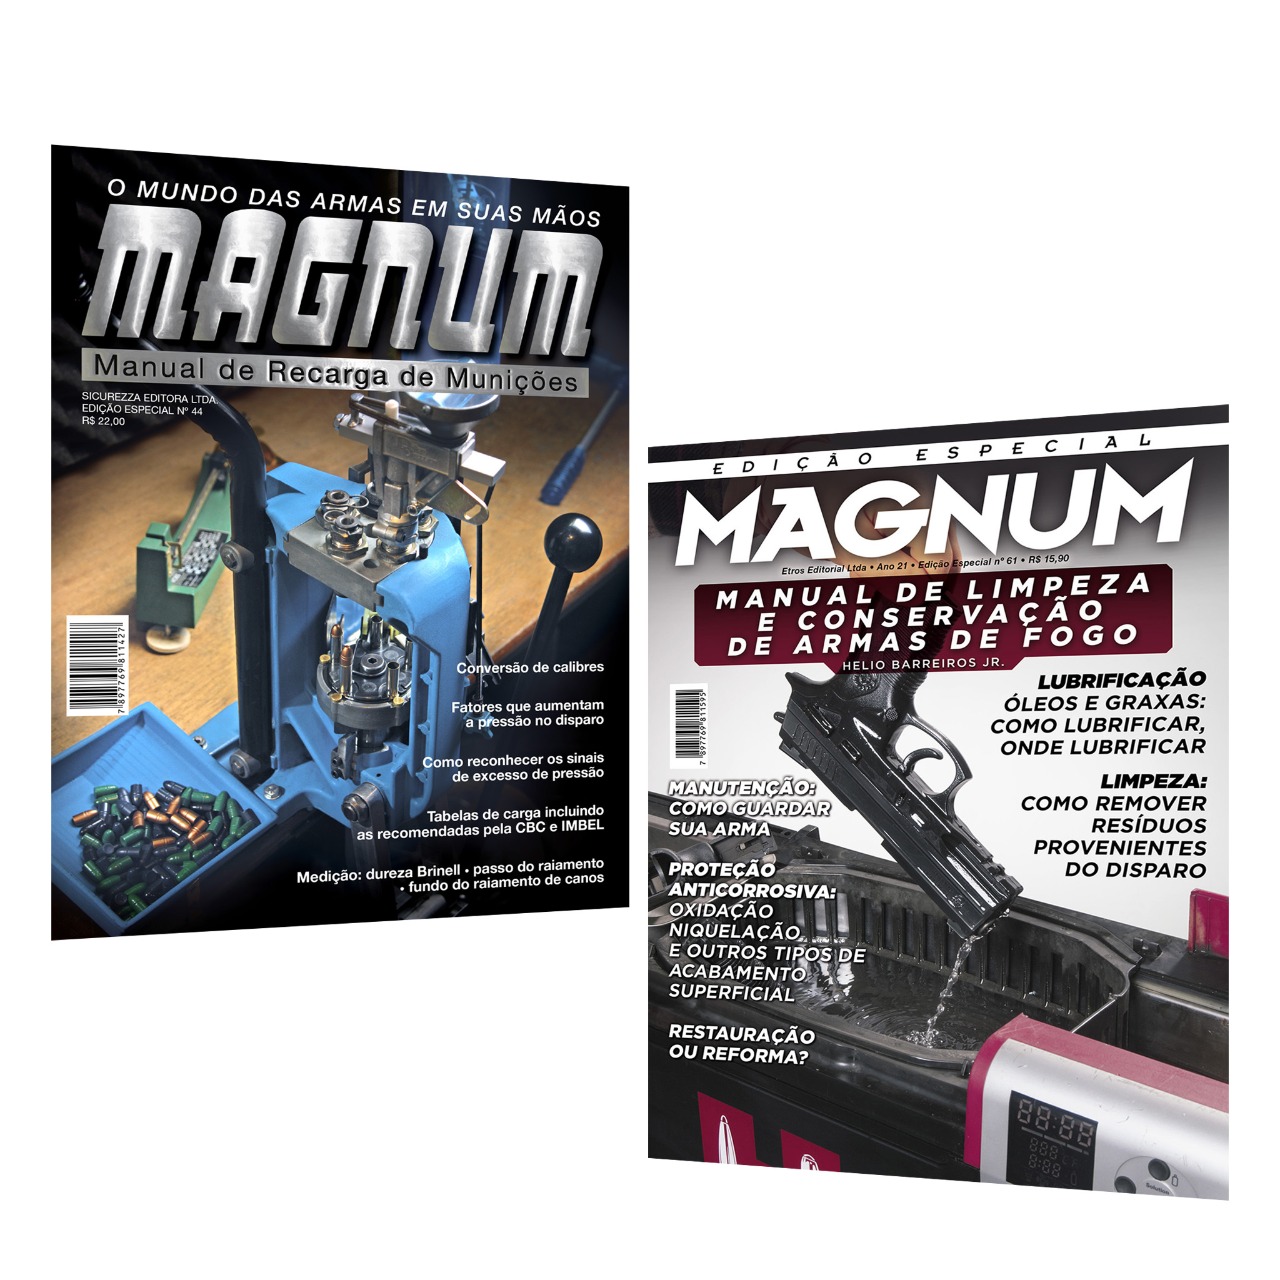 2 Revistas Magnum - Manual Recarga e Manual Conservação 61/44